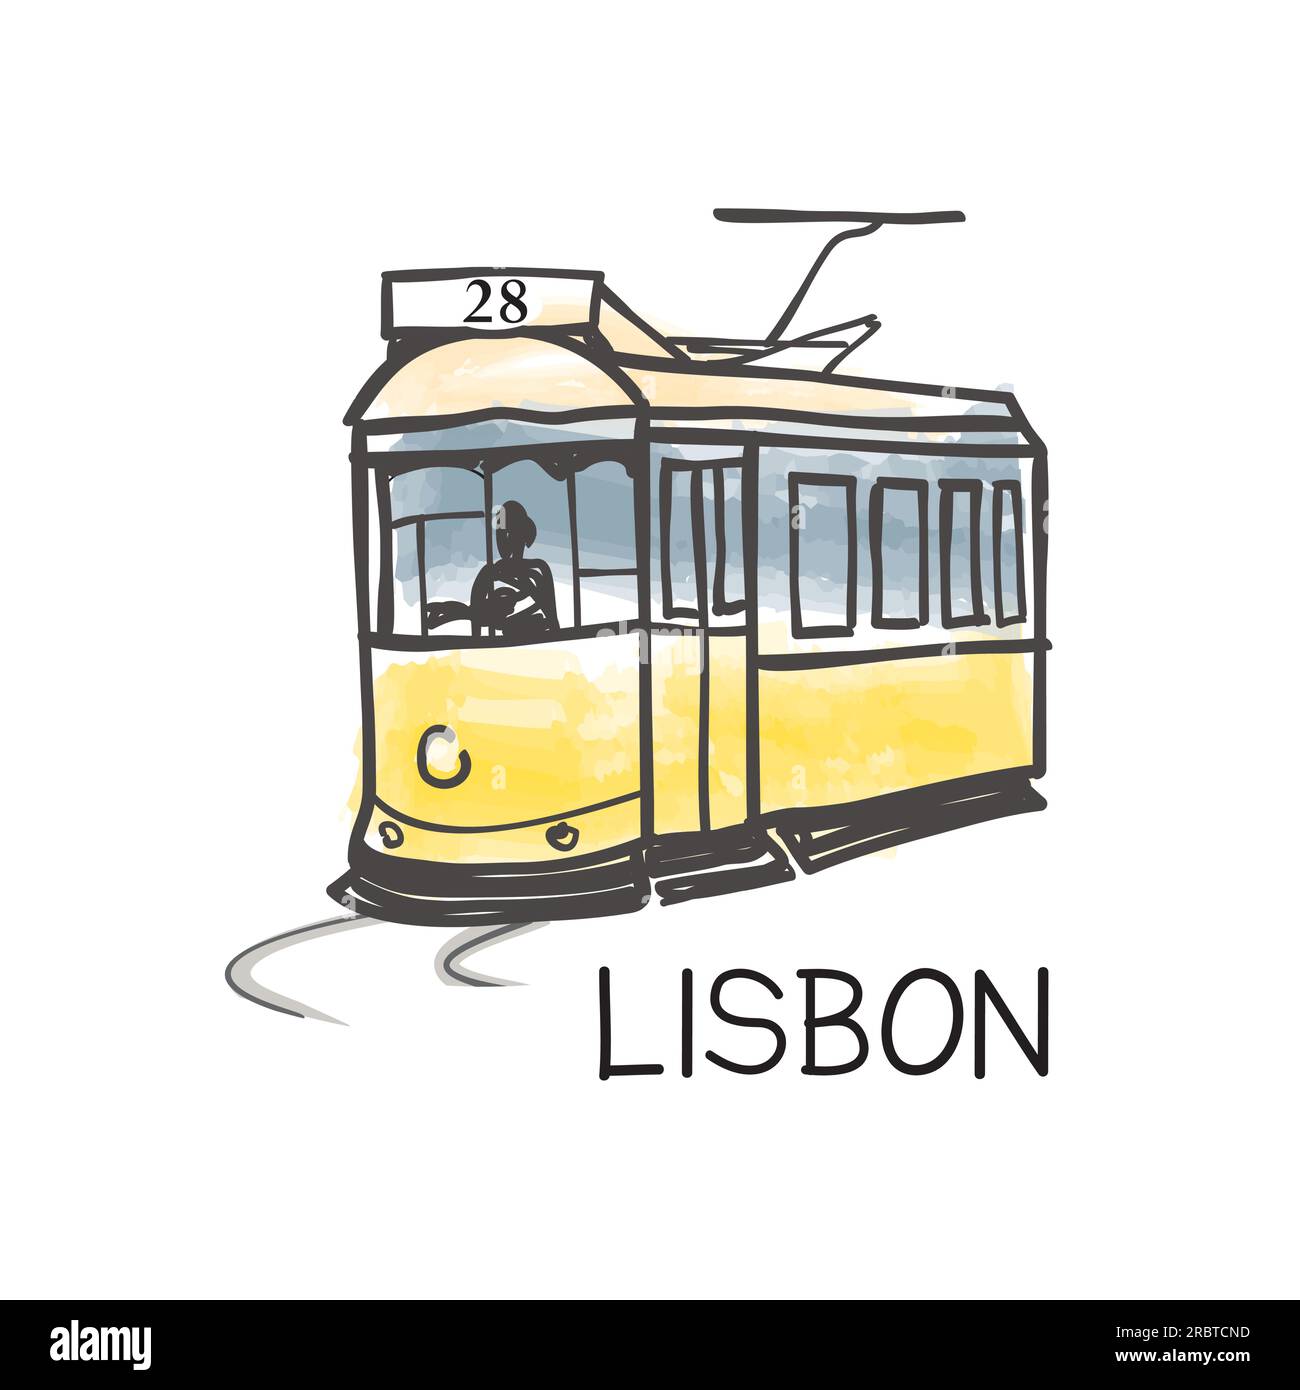 Wahrzeichen der Stadt Lissabon berühmte alte gelbe Straßenbahn Nr. 28, der älteste europäische öffentliche Nahverkehr der Altstadt, Lissabon, Portugal. Retro-Poster Touristenattr Stock Vektor